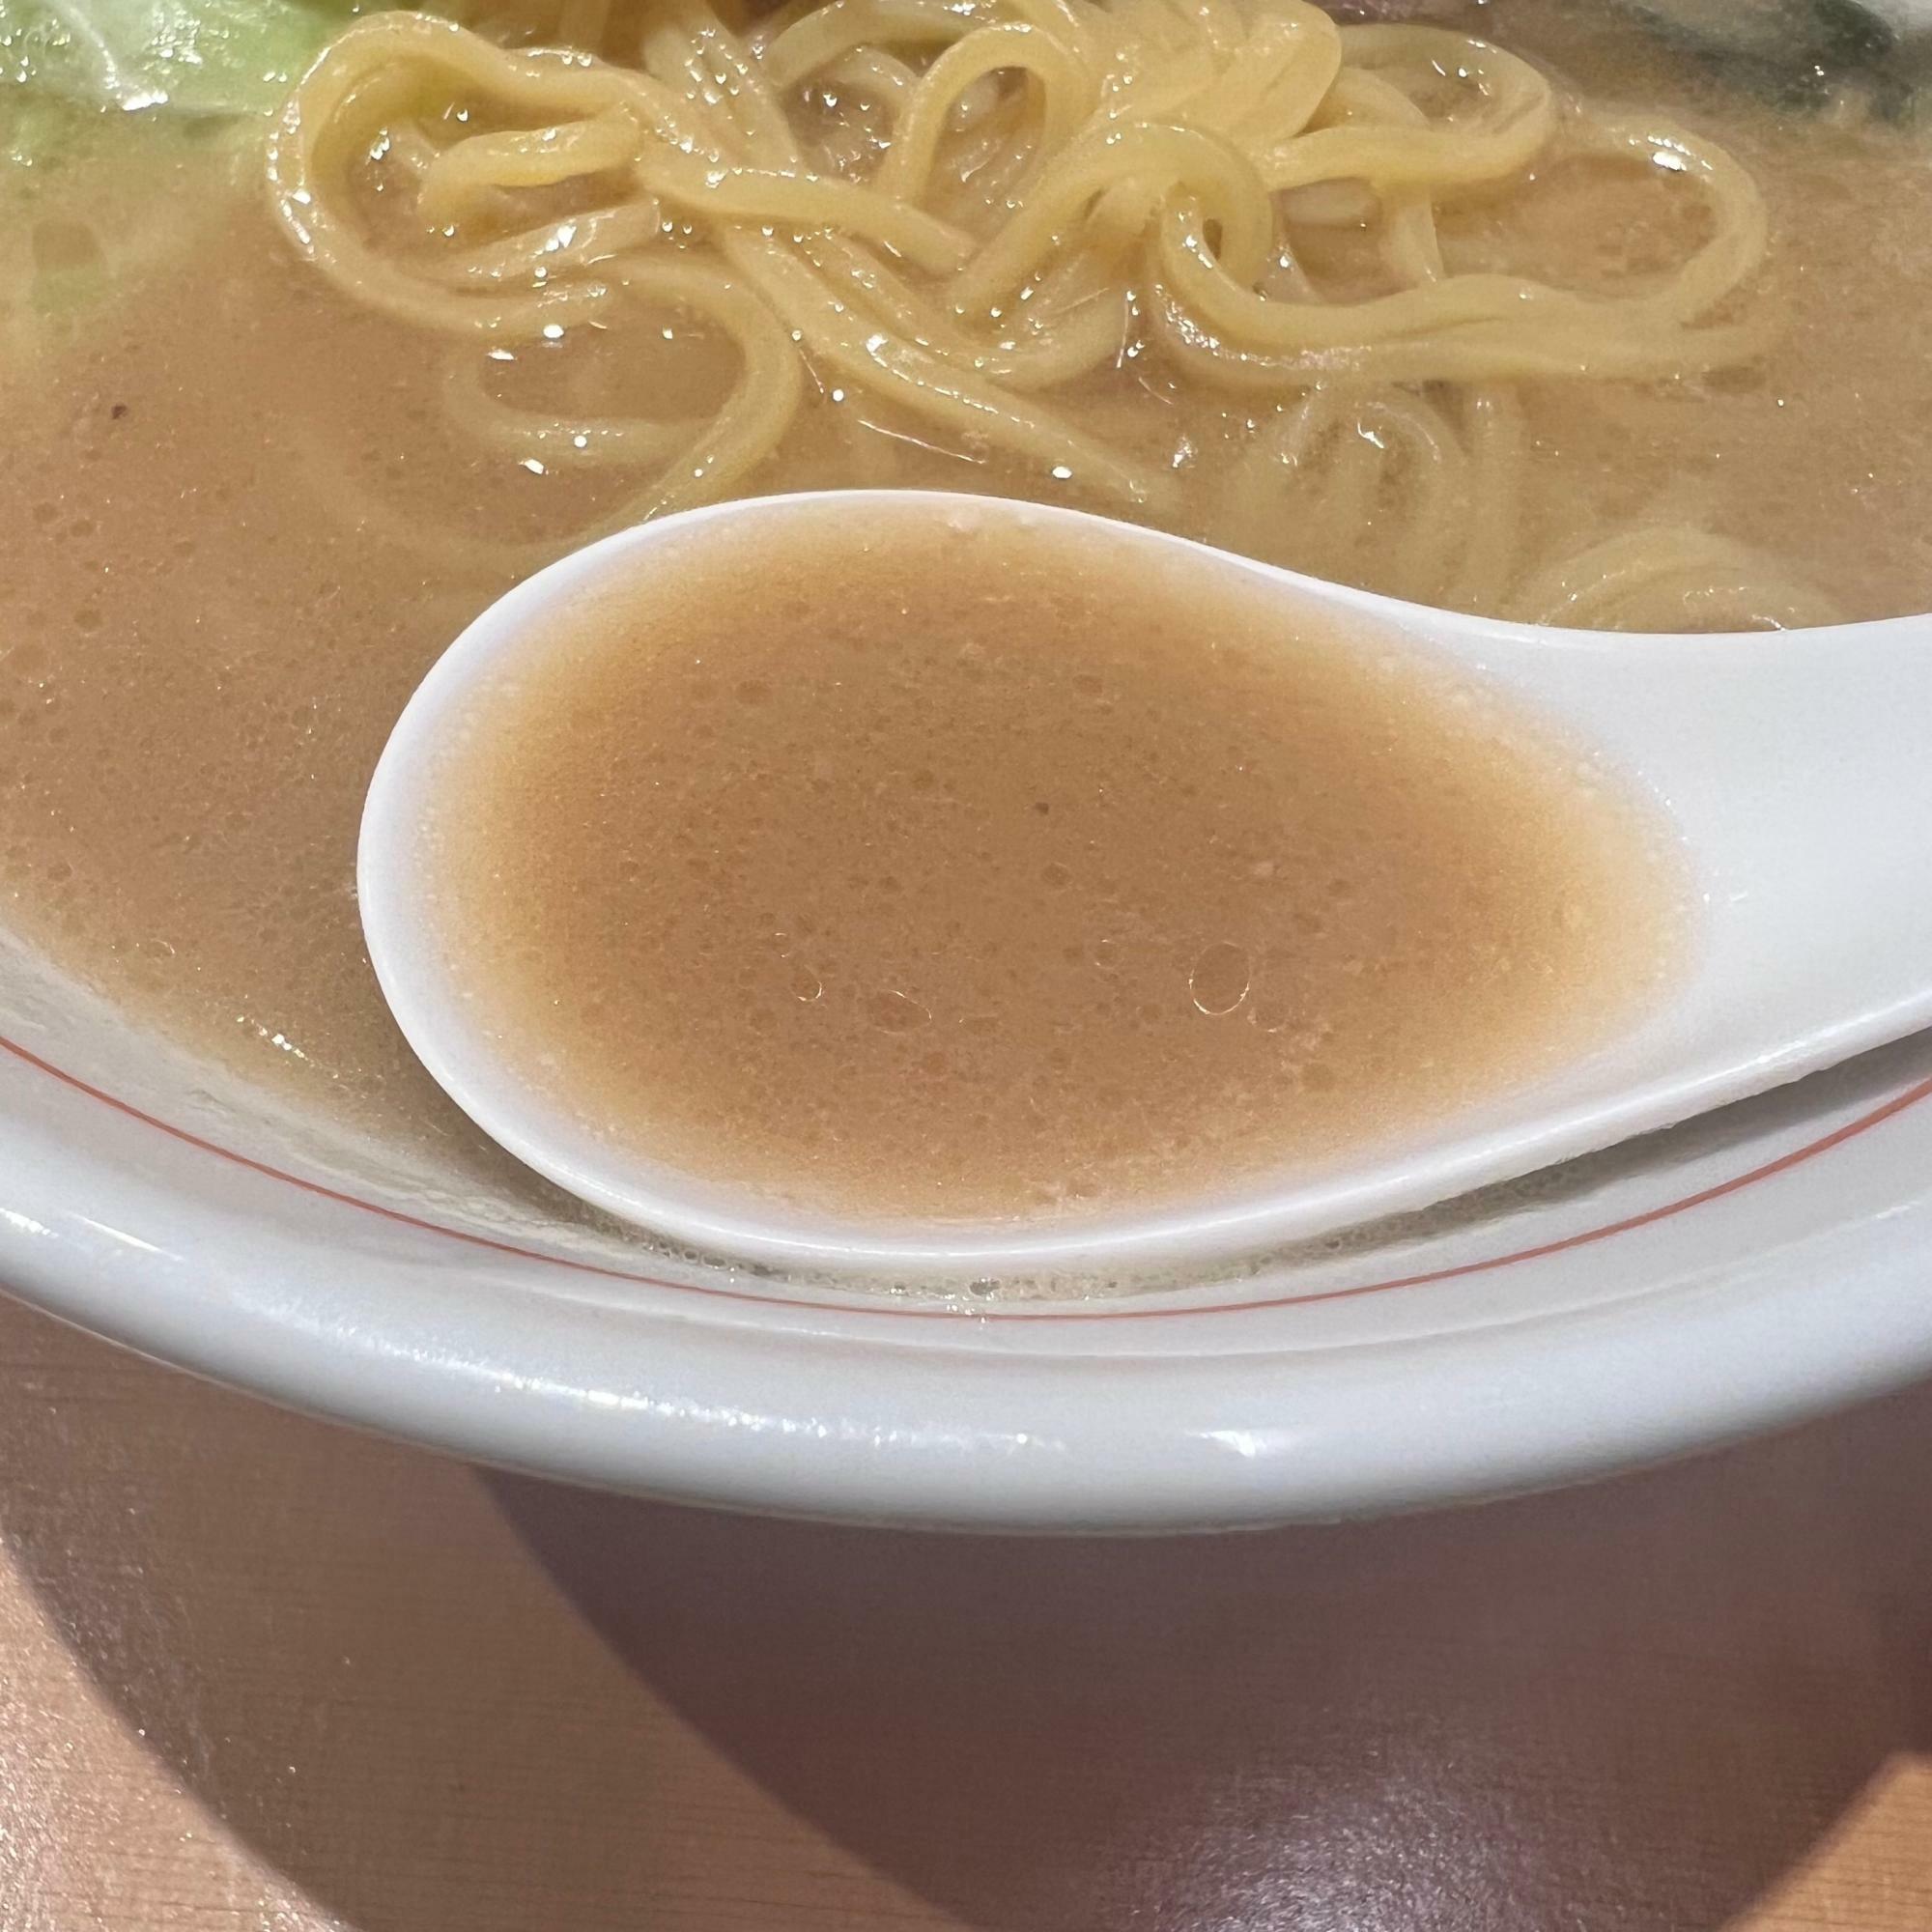 非常にまろやかで飲みやすいスープです。